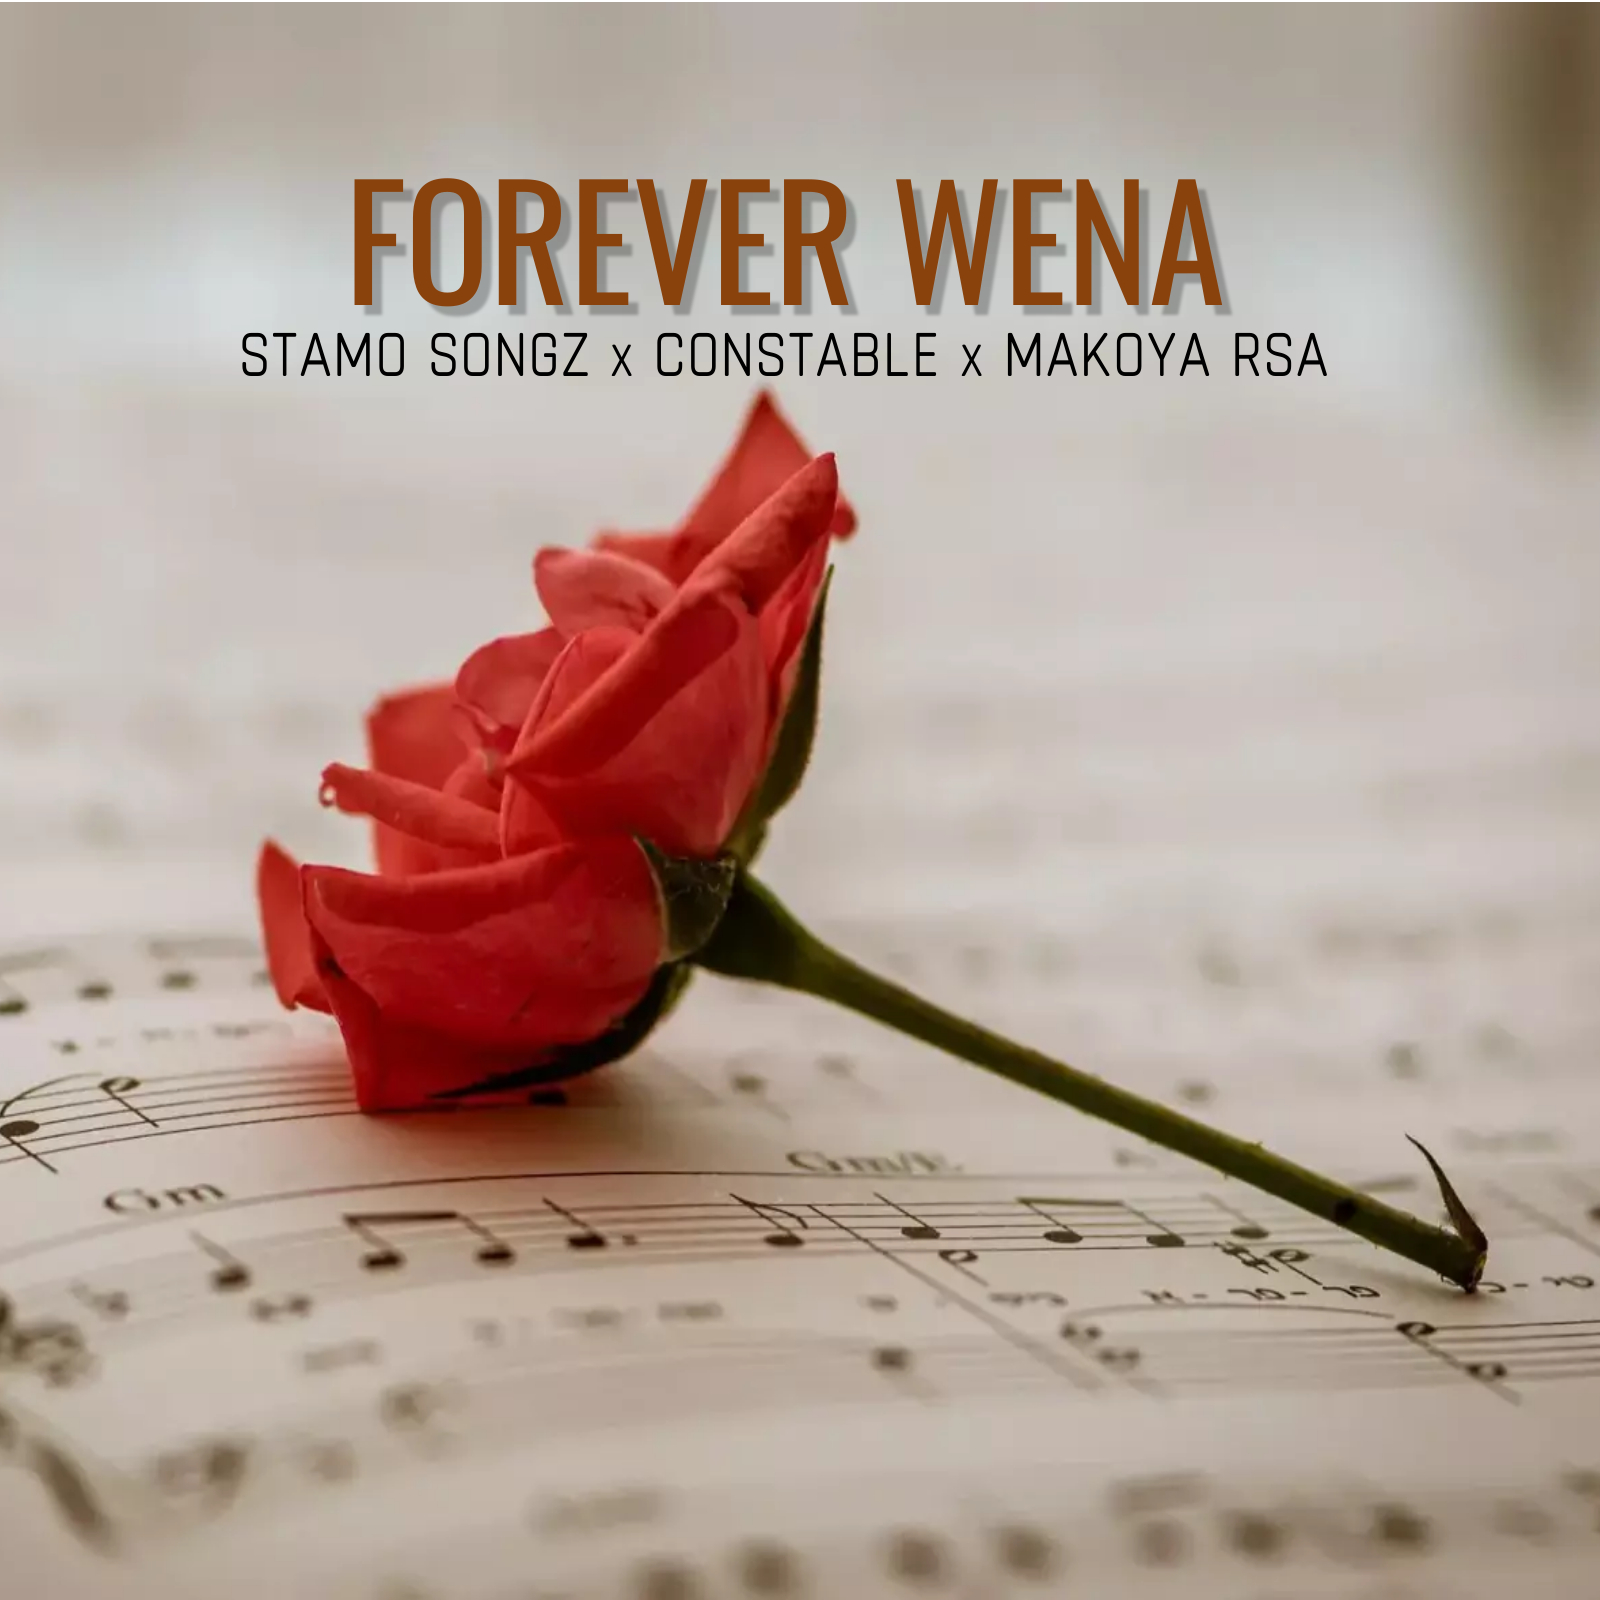 Forever Wena (Official Audio) - Stamo Songz x Constable x Makoya RSA